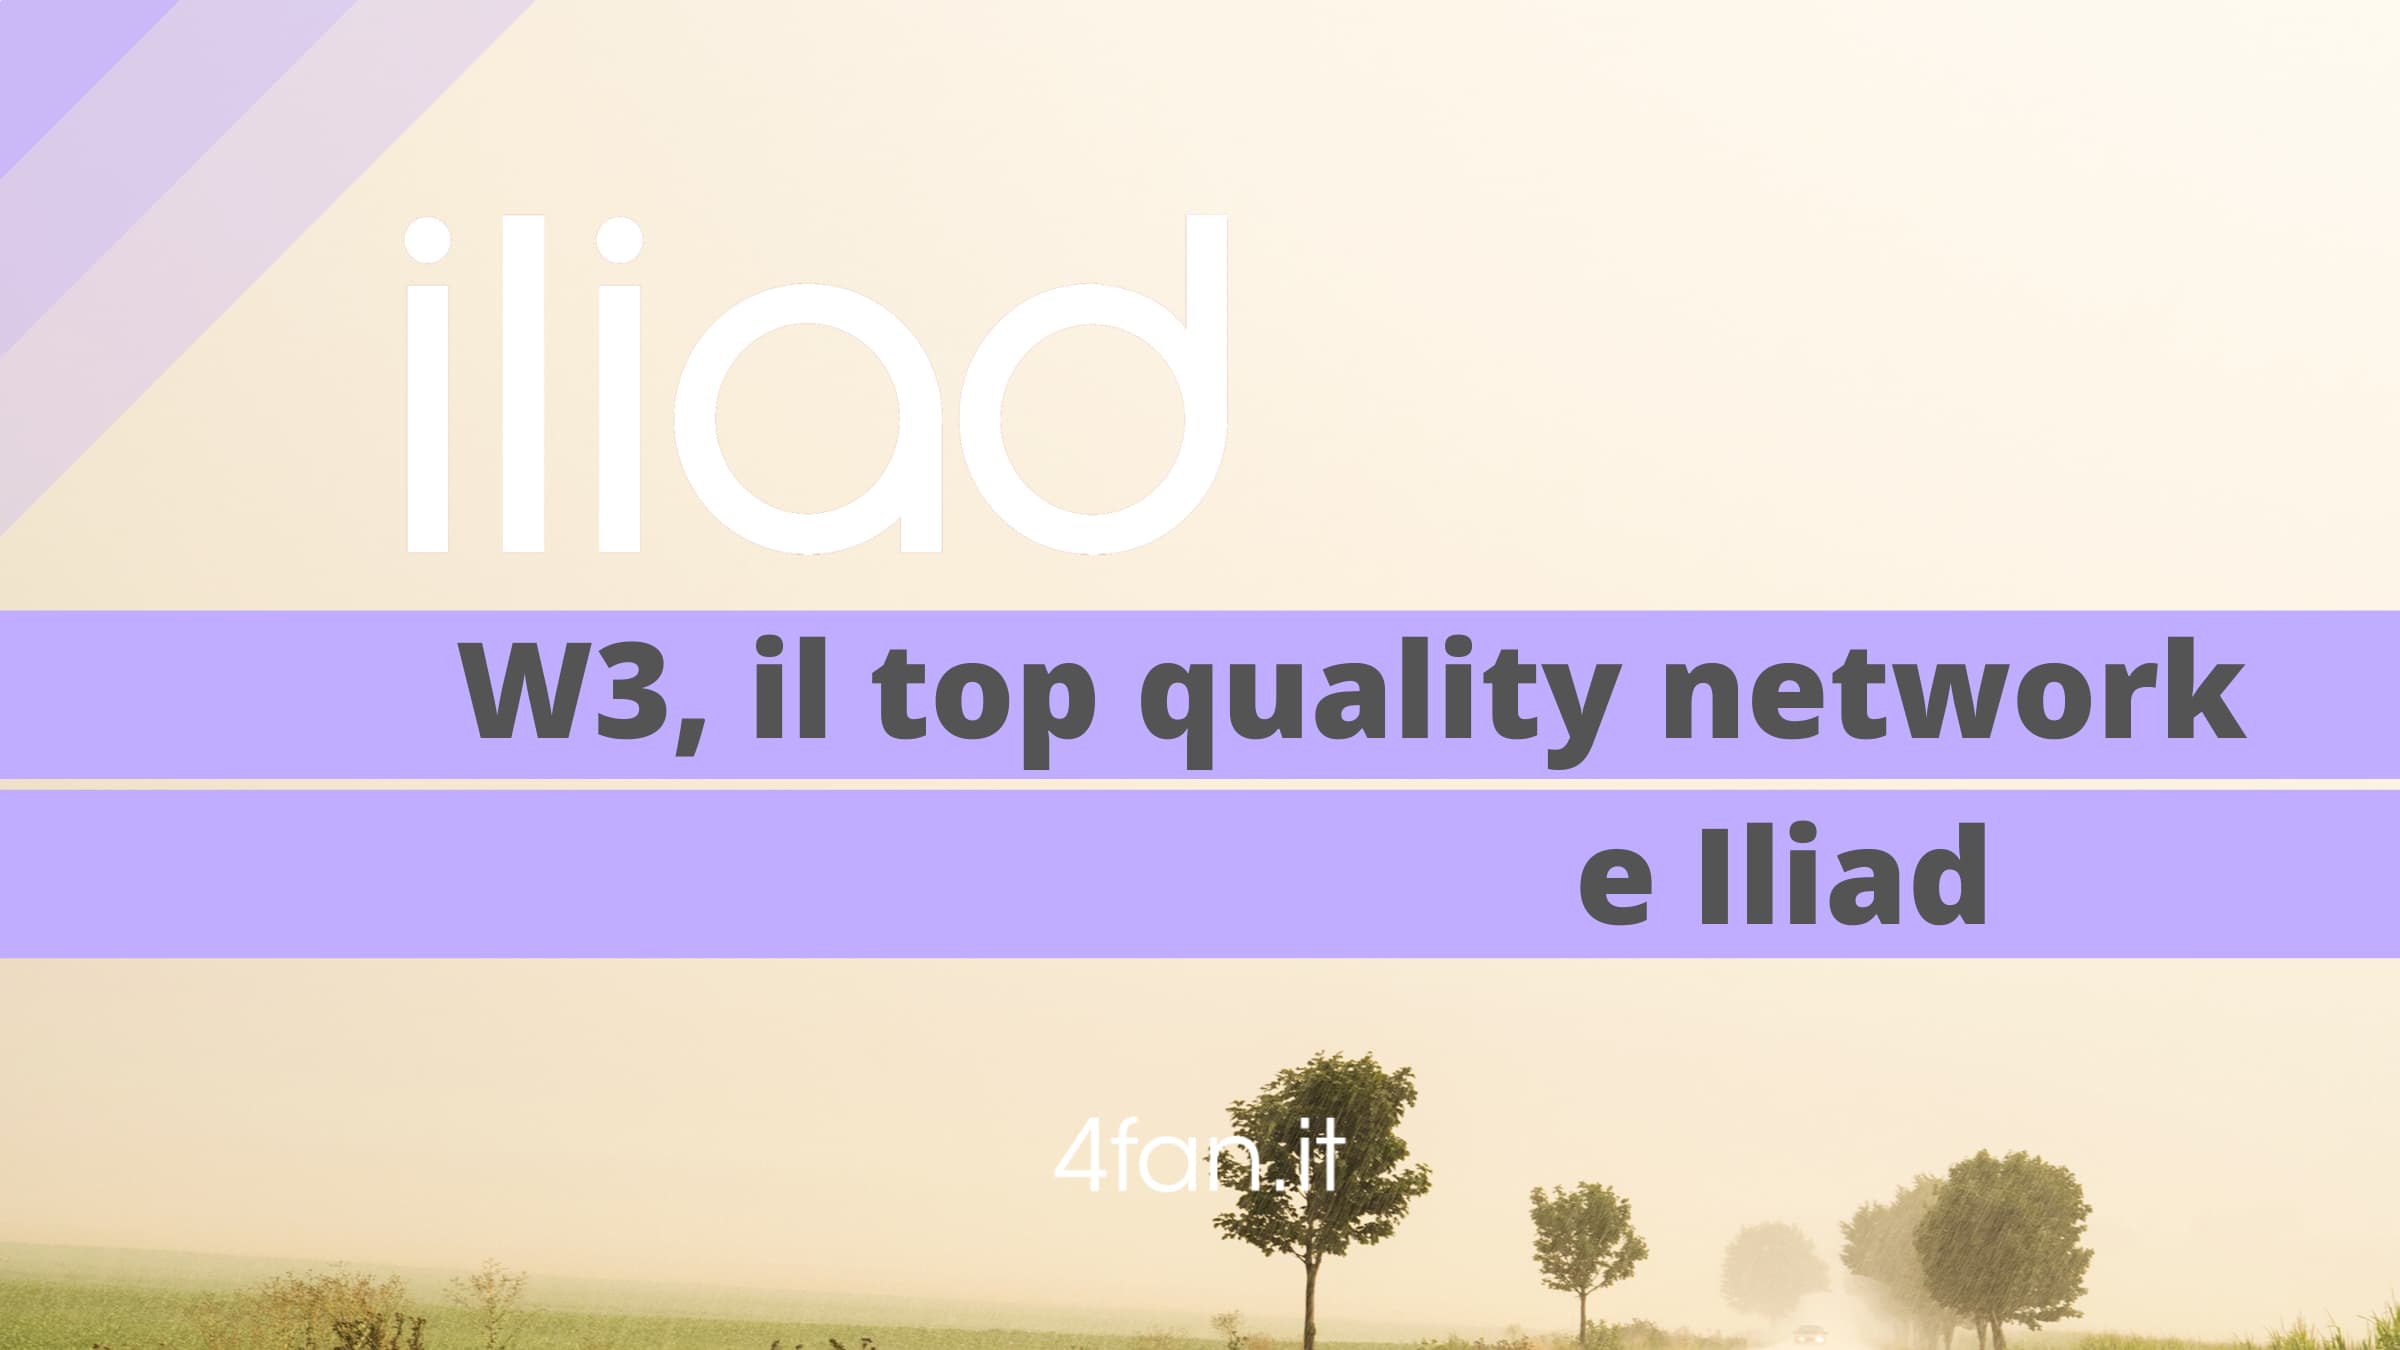 Iliad W3 Top Quality Network